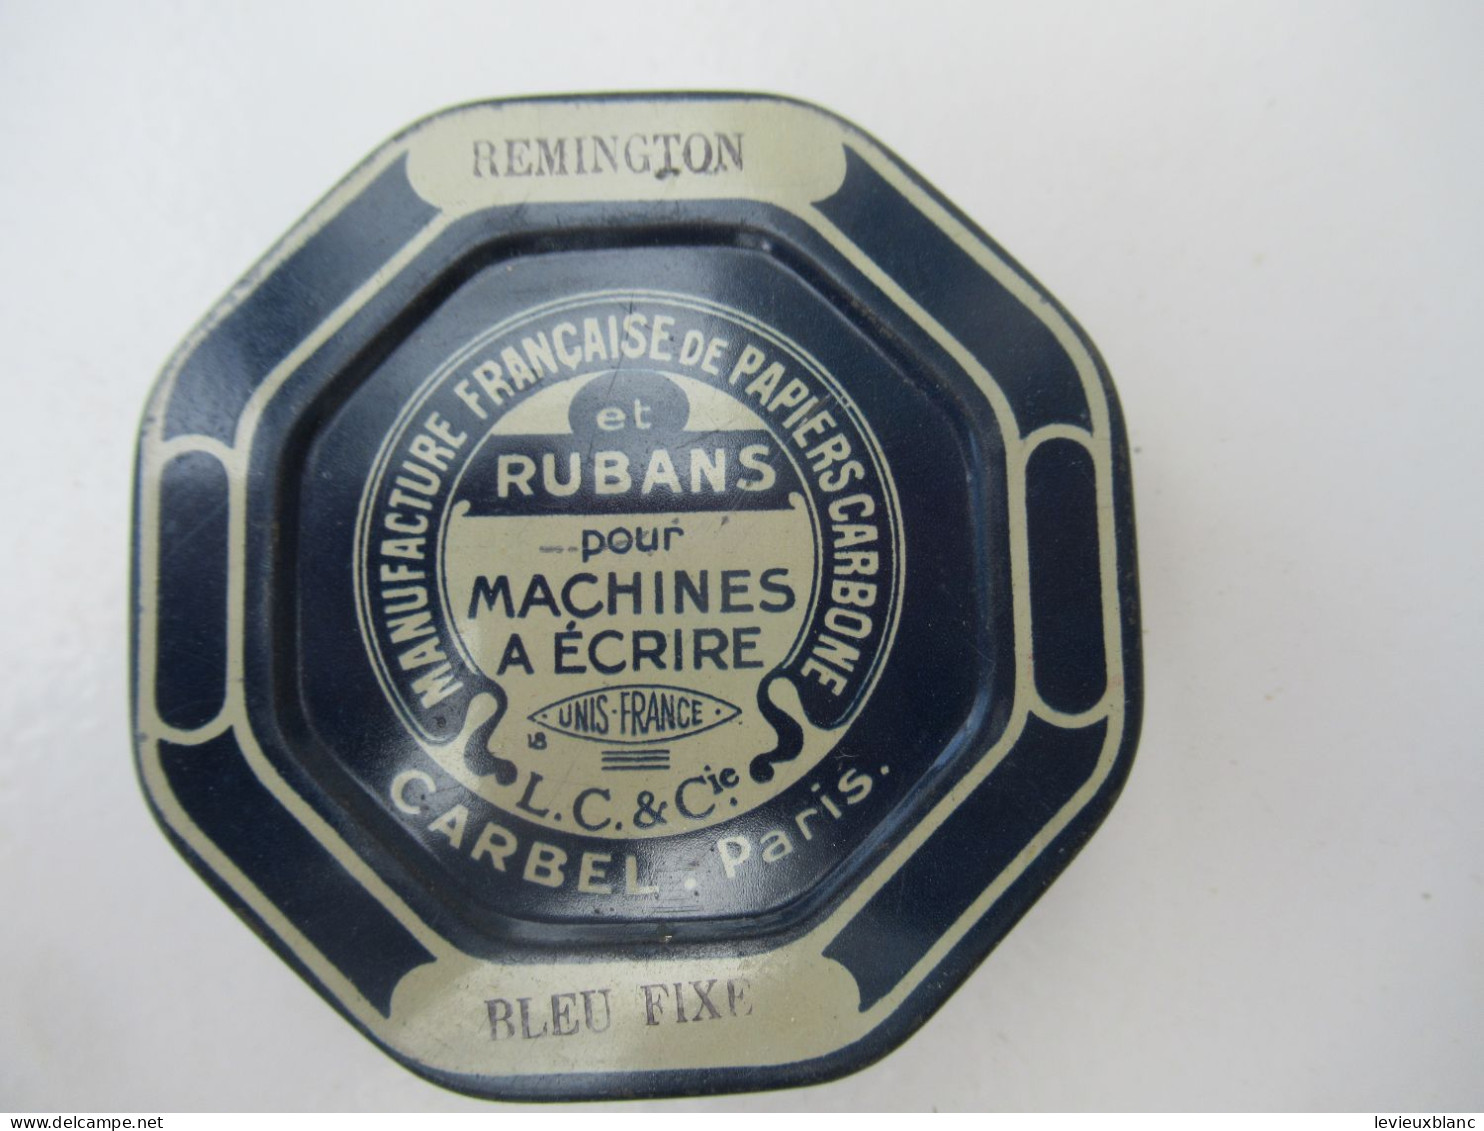 Ruban Pour Machine à écrire/REMINGTON/Manufacture Française De Papiers Carbones/ CARBEL/  Paris/Vers 1930-1960   BFPP254 - Dozen